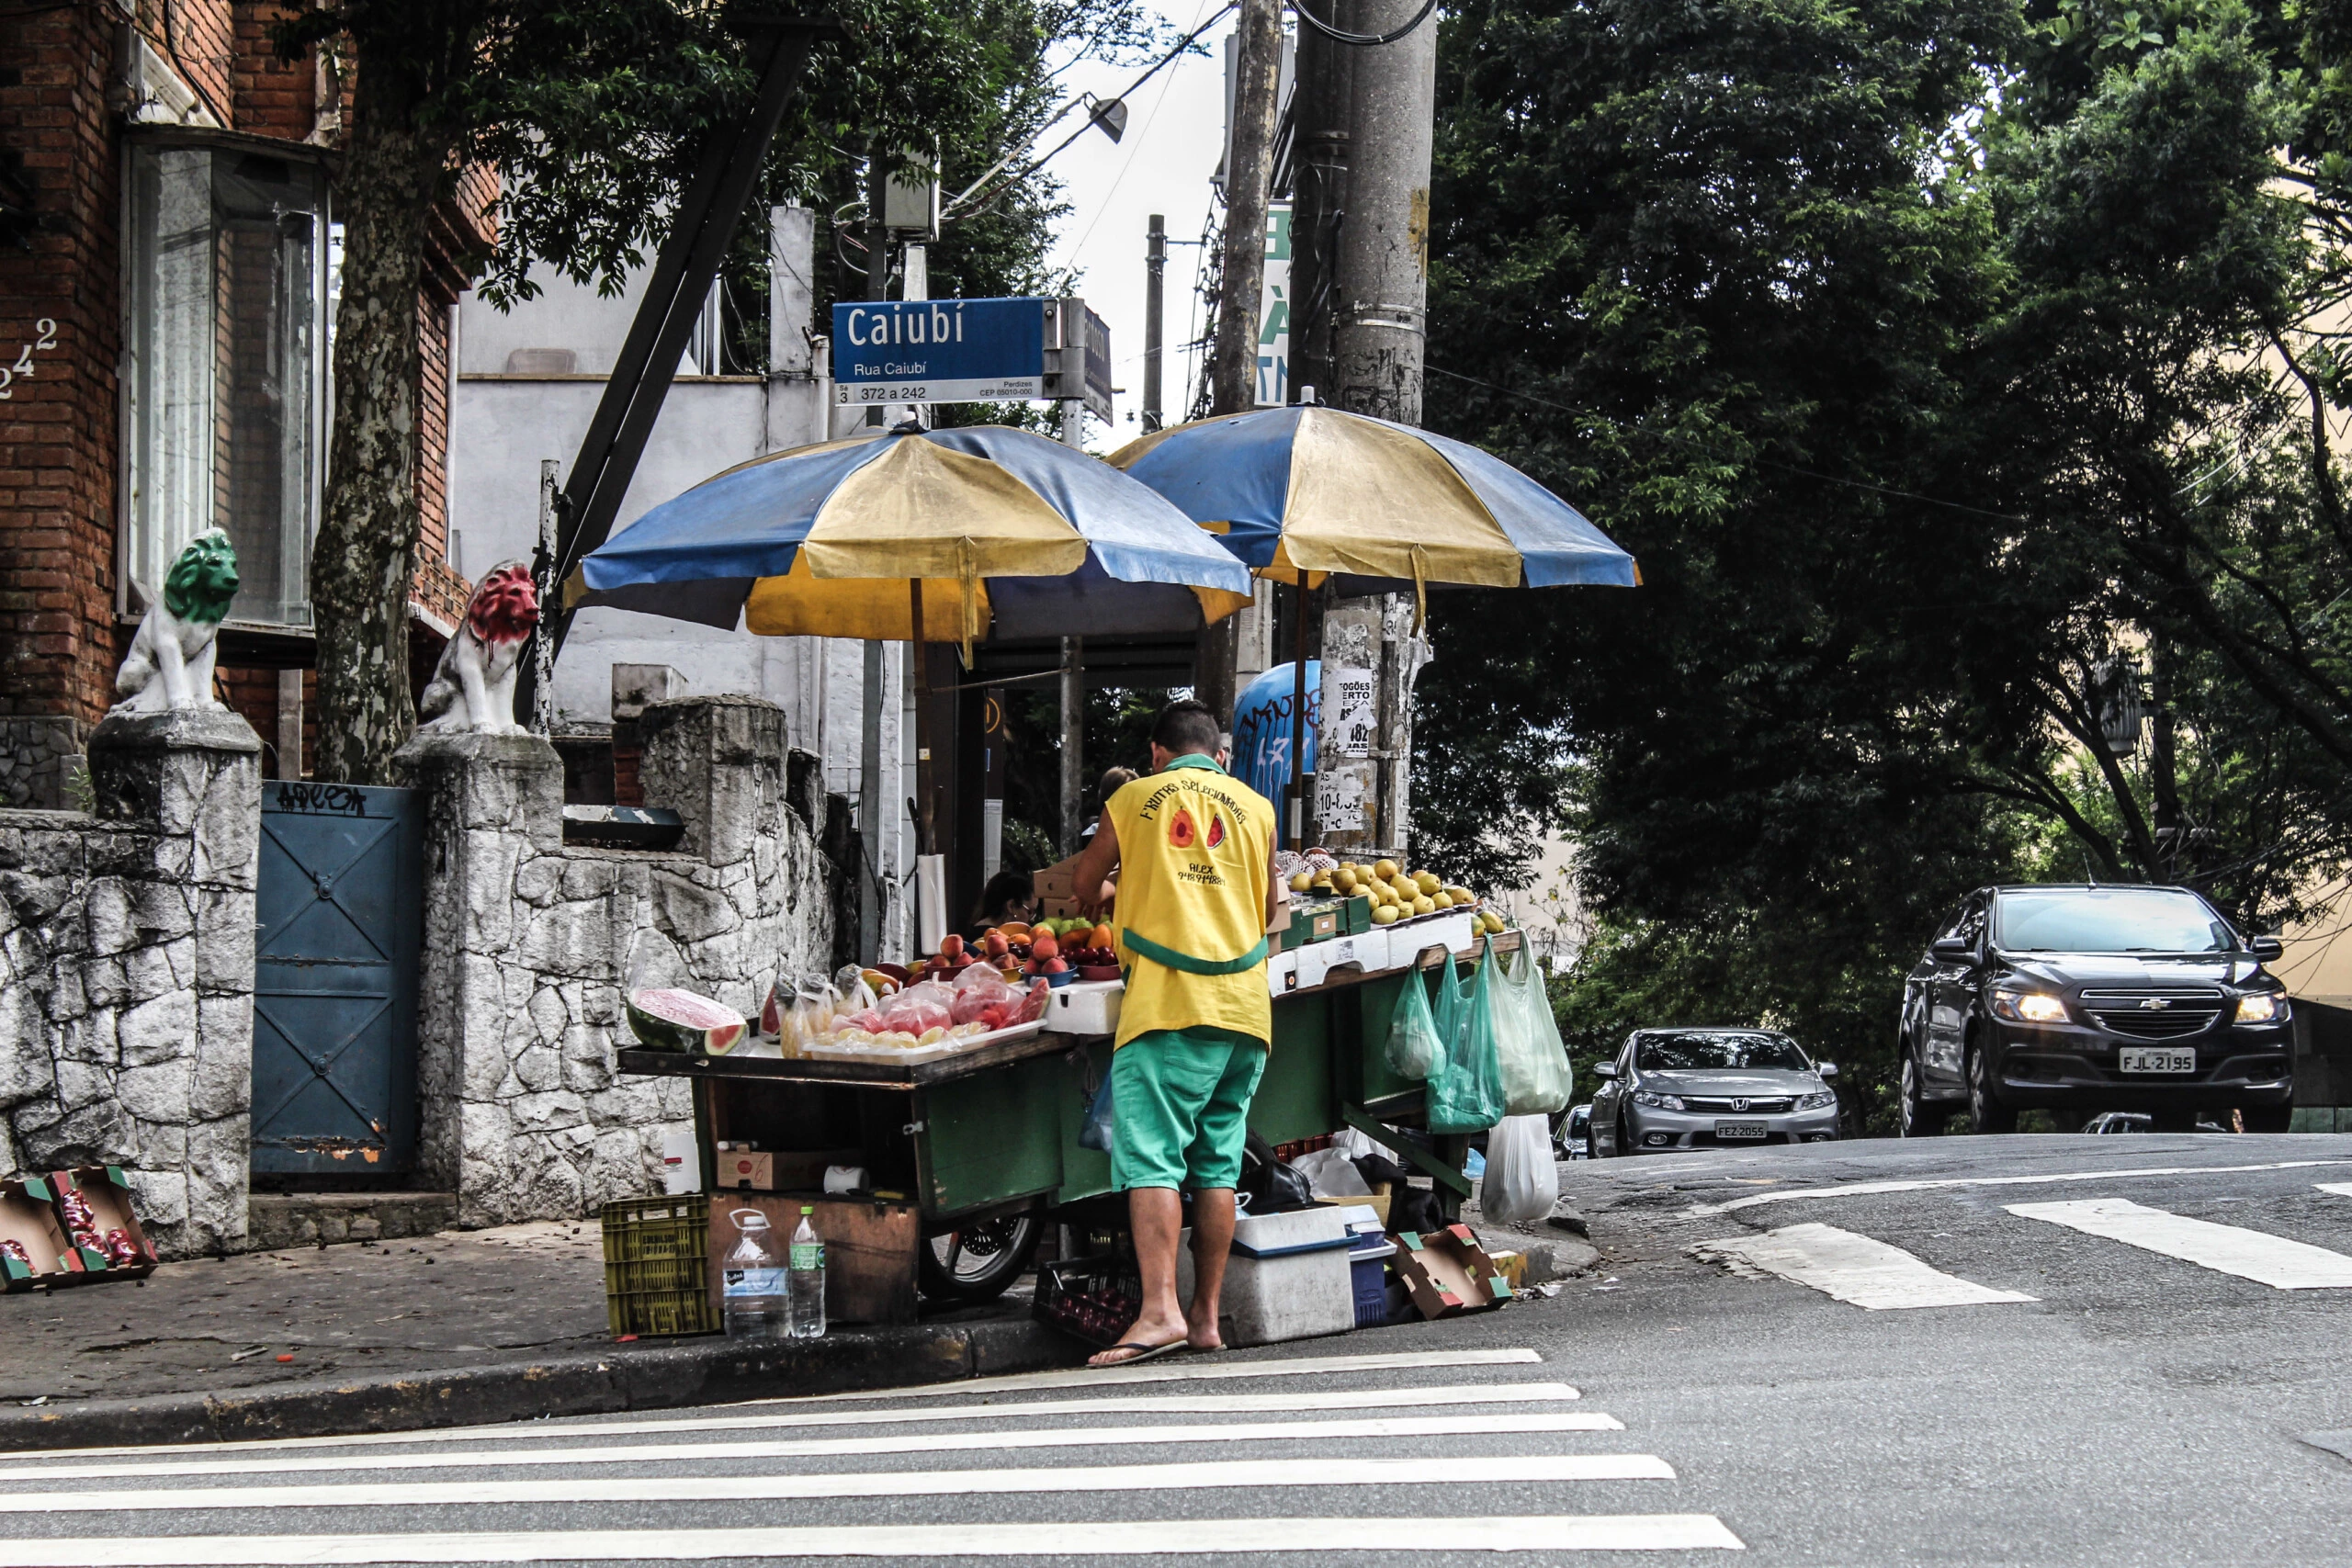 Ambulante com barraca de frutas no bairro de Perdizes, zona oeste de São Paulo.